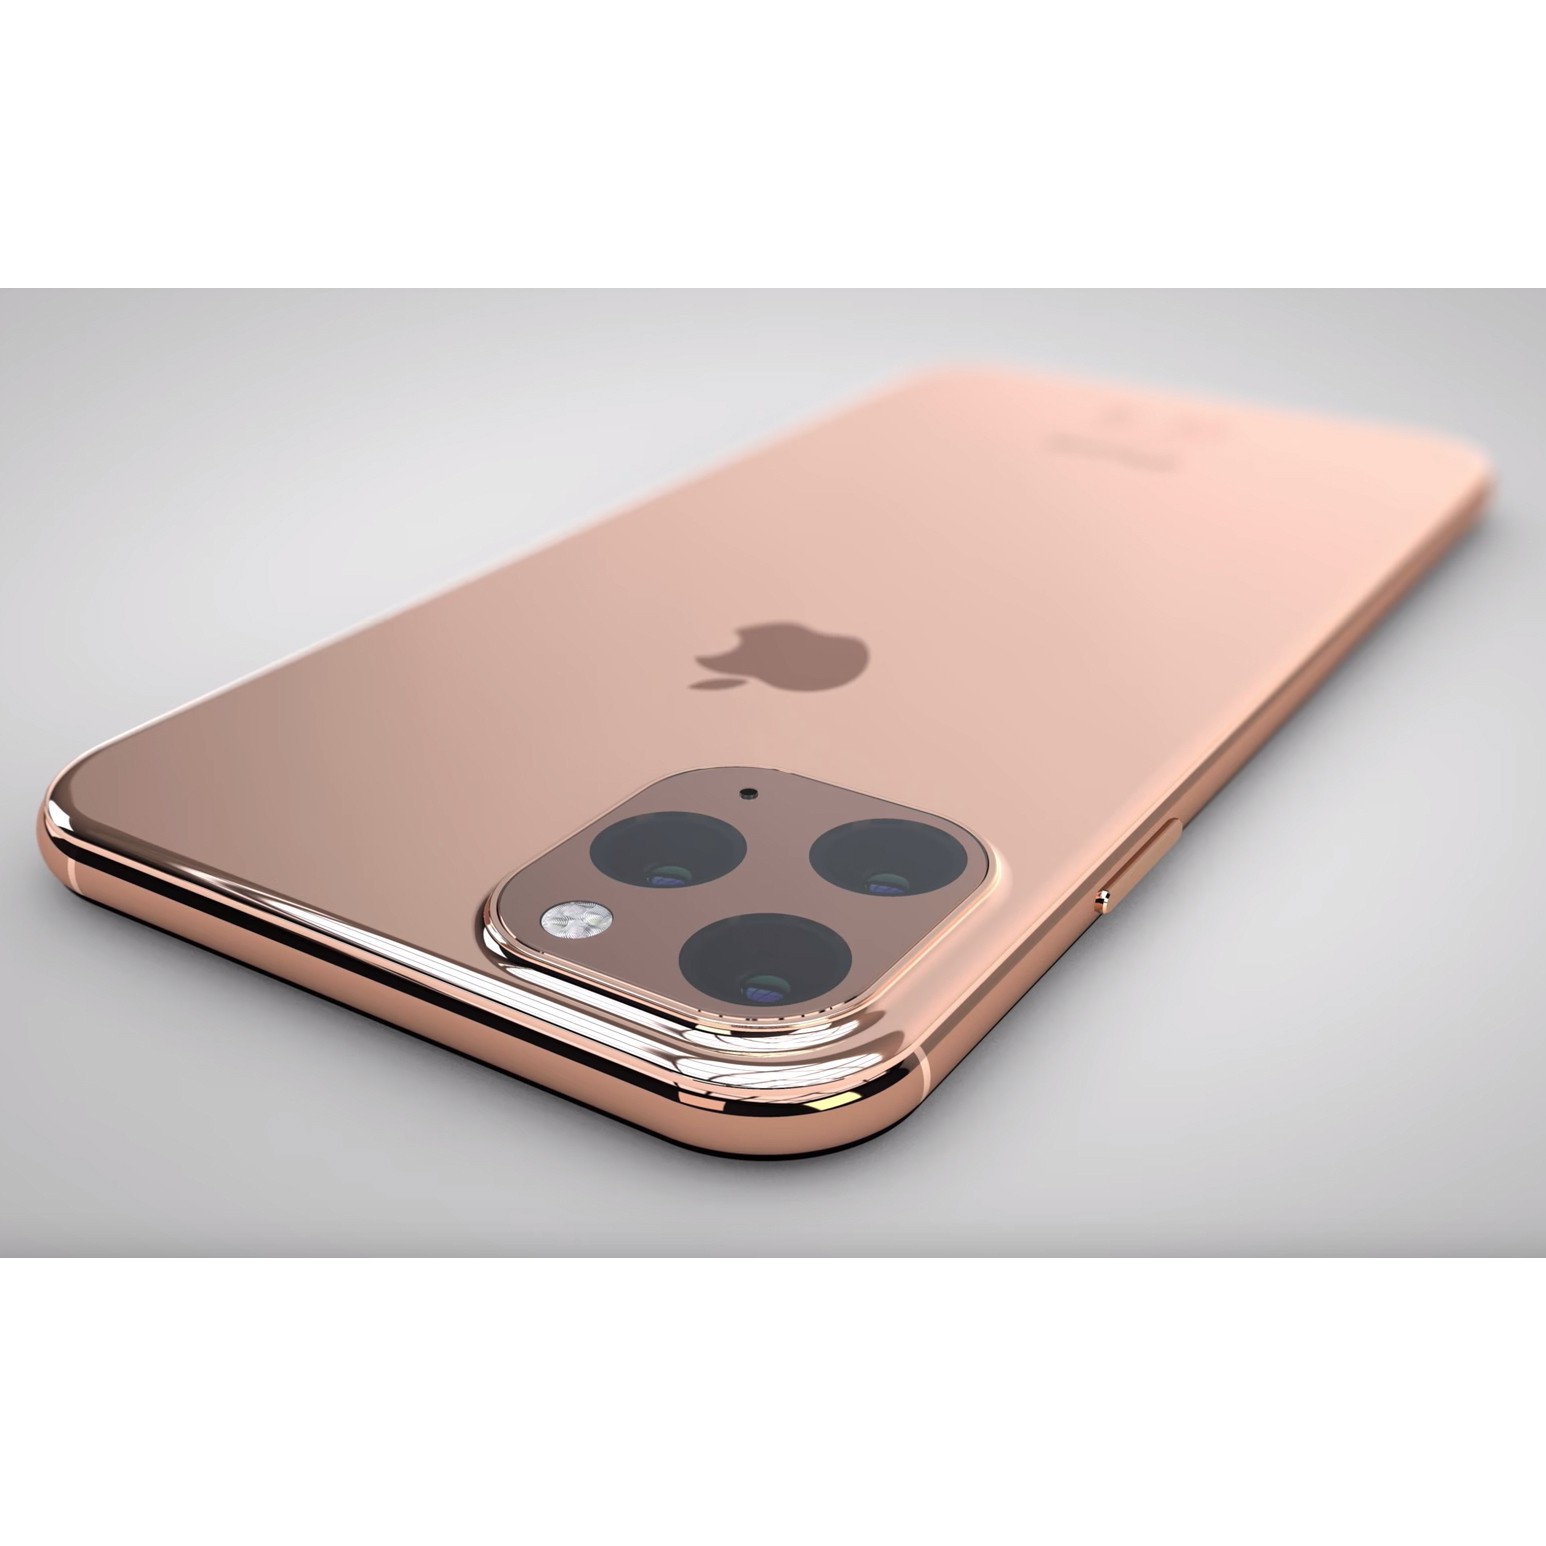 Apple iPhone 11 Pro Max 256GB (золотистый) купить в Дивногорск + отзывы и  характеристики